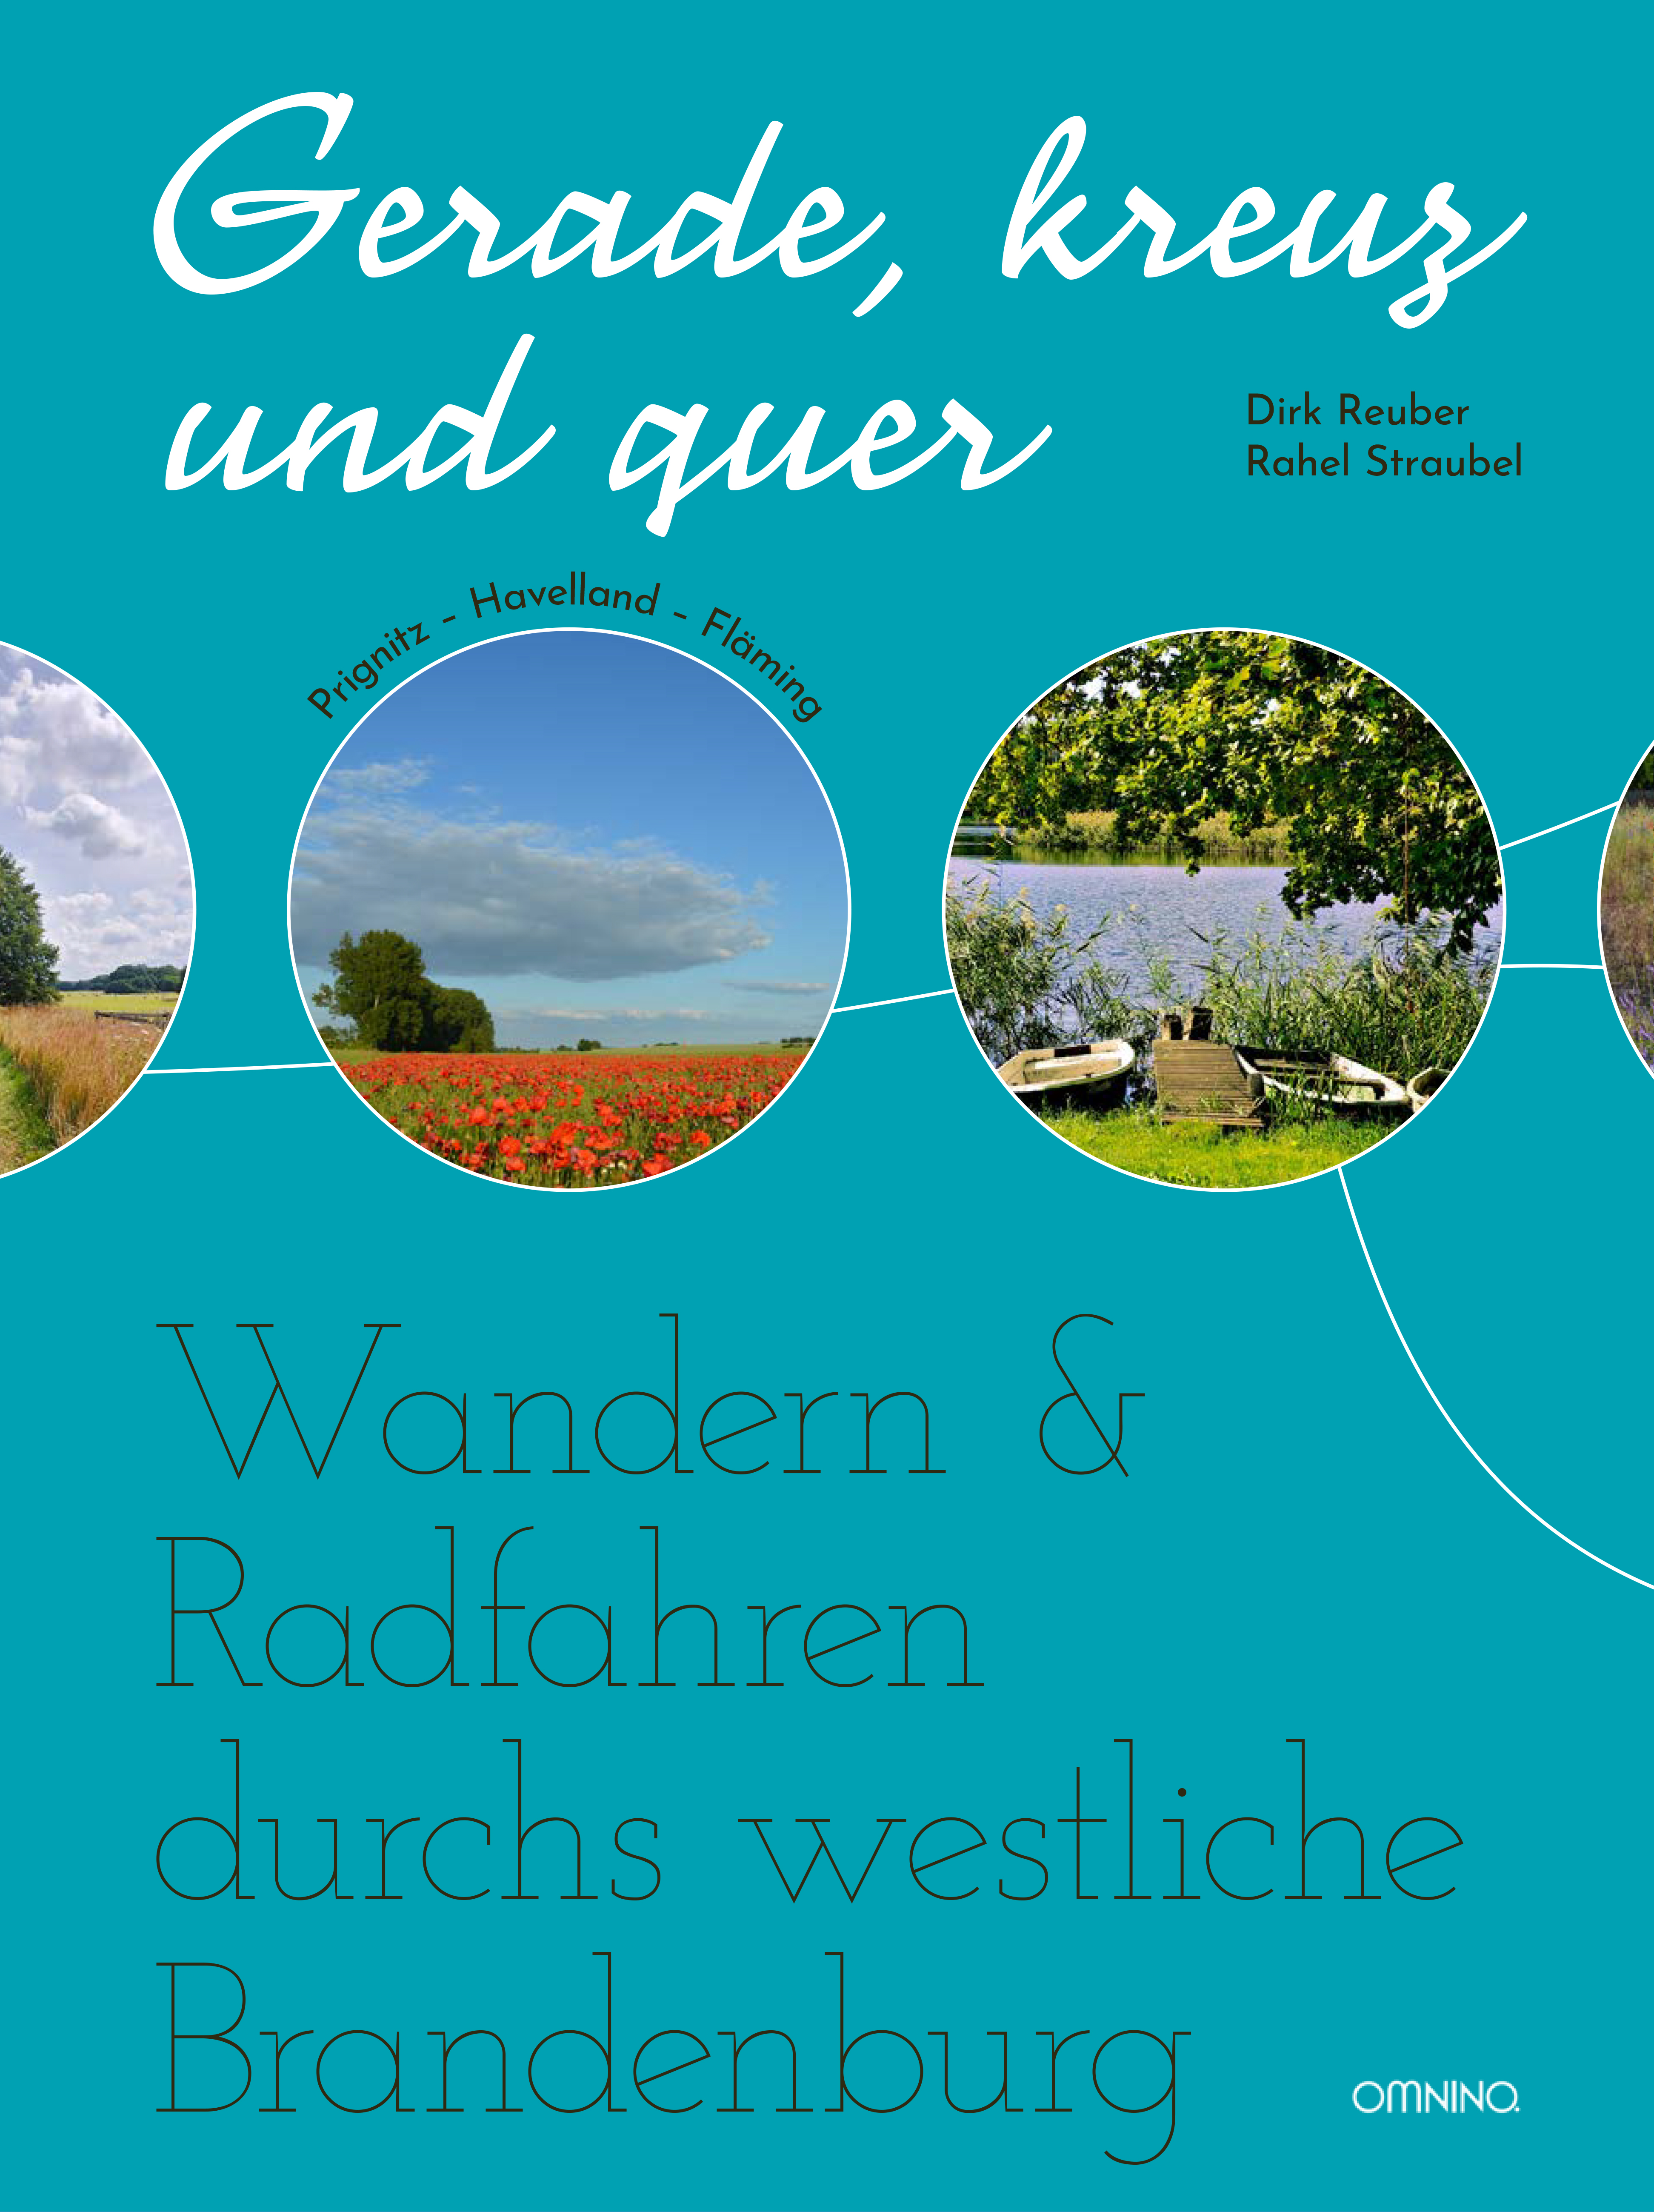 Gerade, kreuz und quer: Wandern & Radfahren durchs westliche Brandenburg . Ein Buch von Dirk Reuber und Rahel Straubel